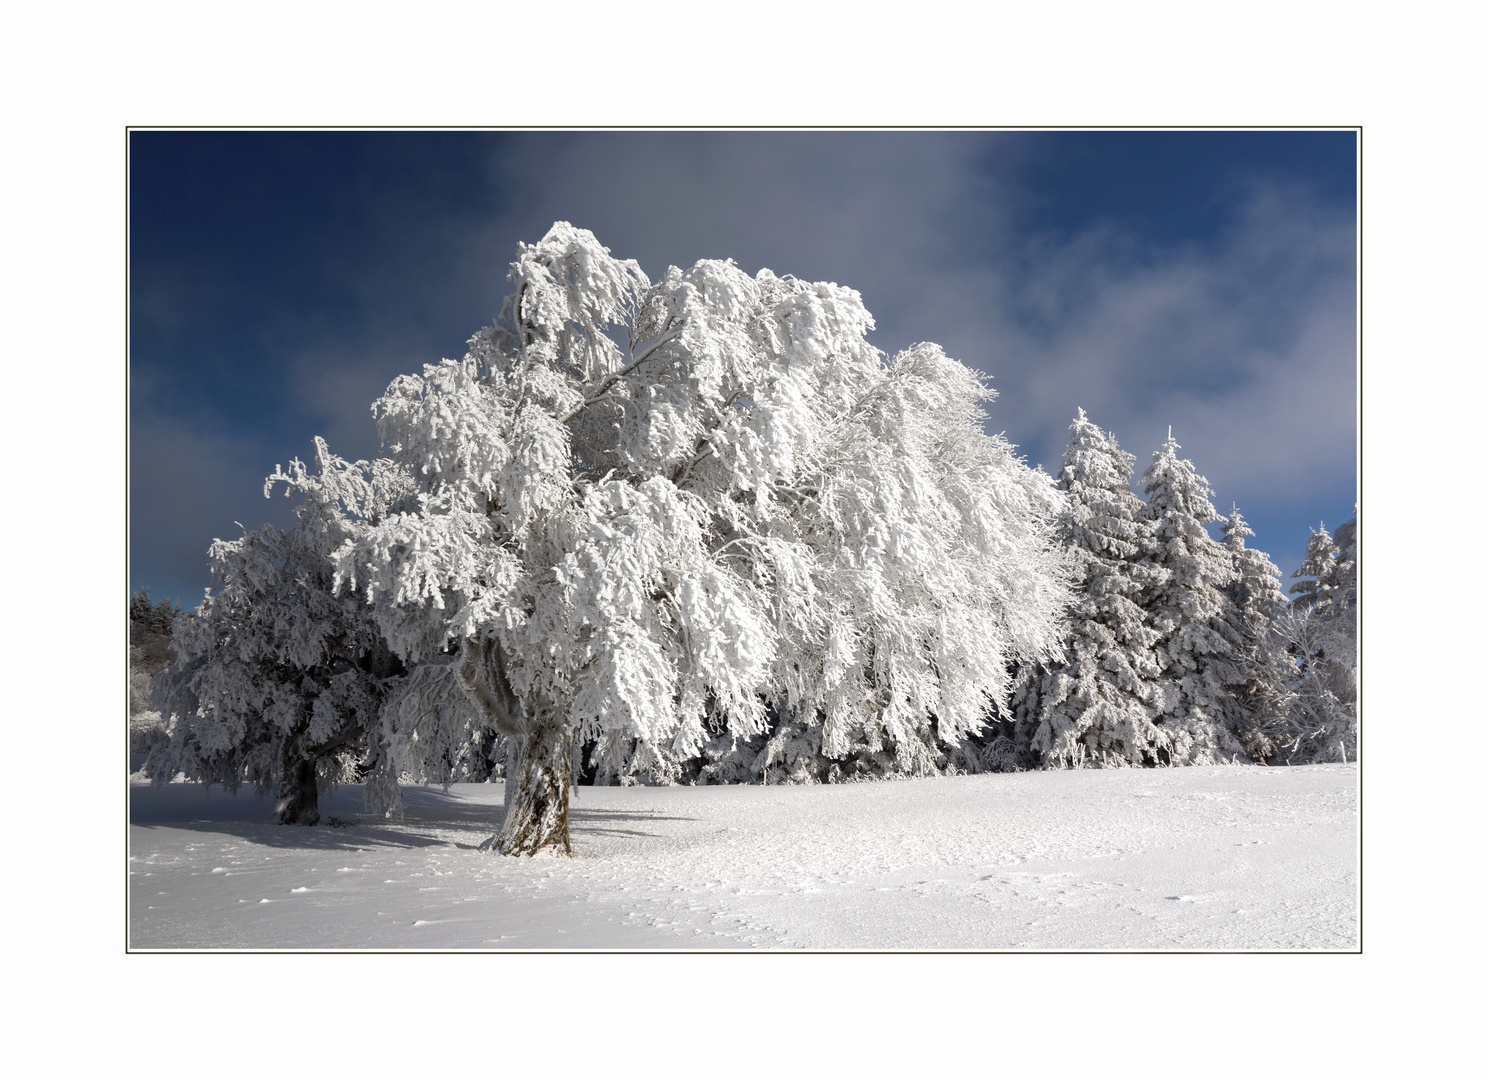 Schwarzwald-Winter 1